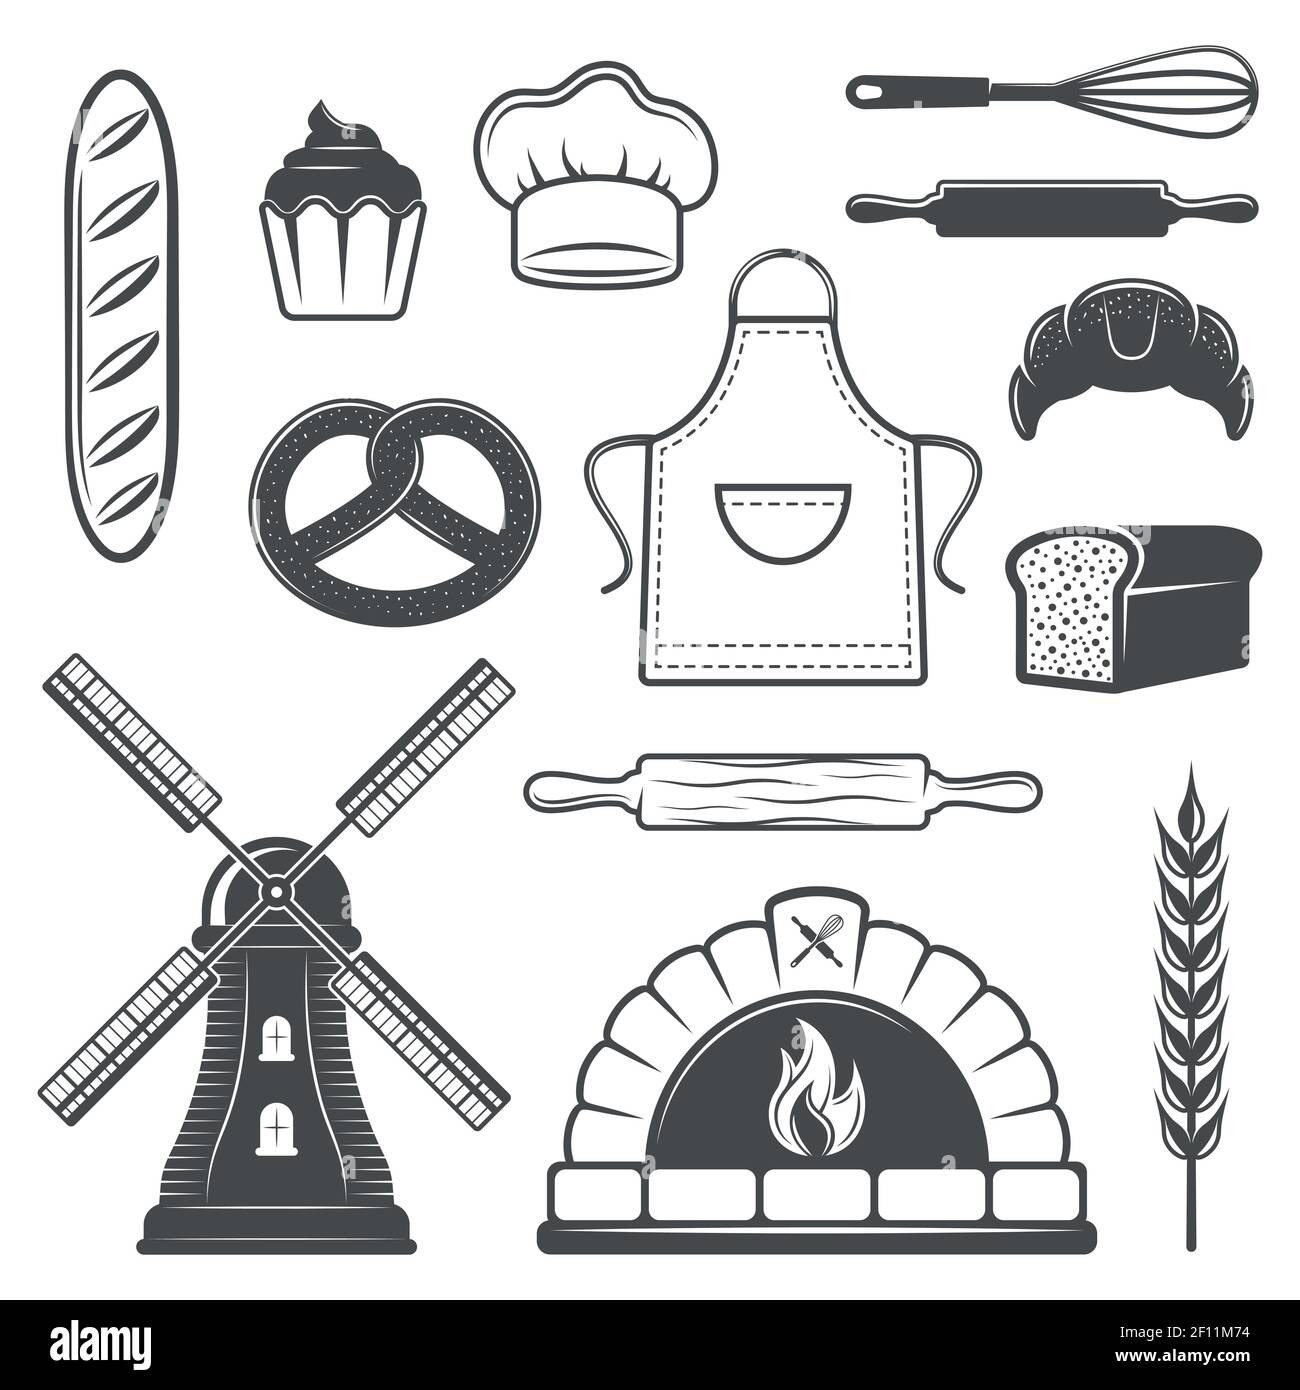 Bäckerei monochrome Elemente Set mit Brot und Gebäck Ofen kulinarisch Werkzeuge Mühle und Weizen isoliert Vektor-Illustration Stock Vektor